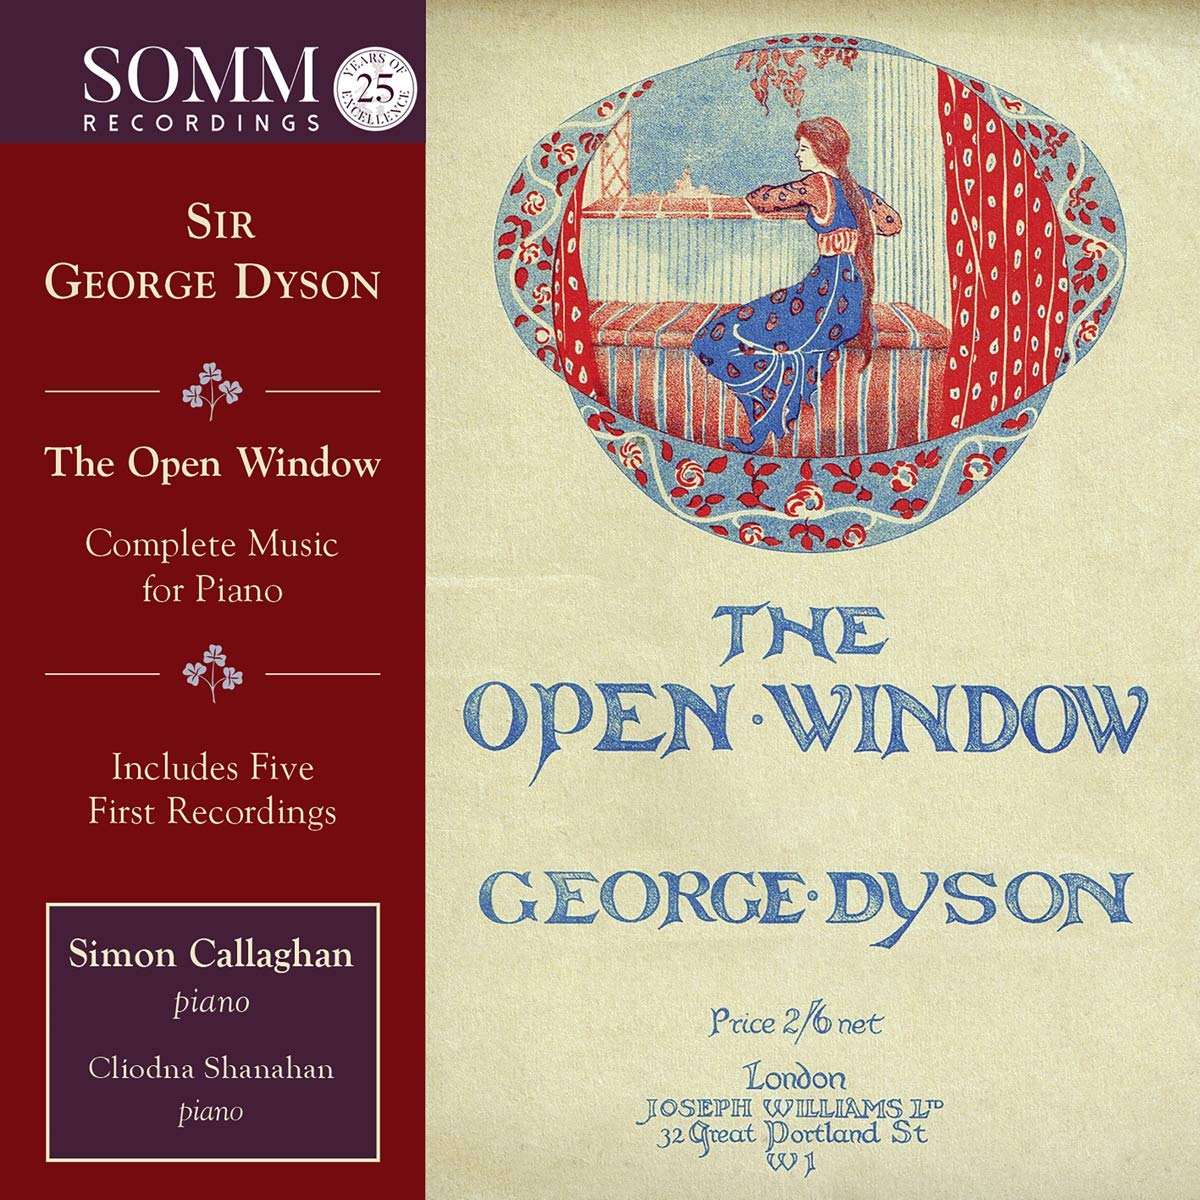 Audio Cd George Dyson - The Open Window - Complete Music For Piano 2 Cd NUOVO SIGILLATO EDIZIONE DEL SUBITO DISPONIBILE